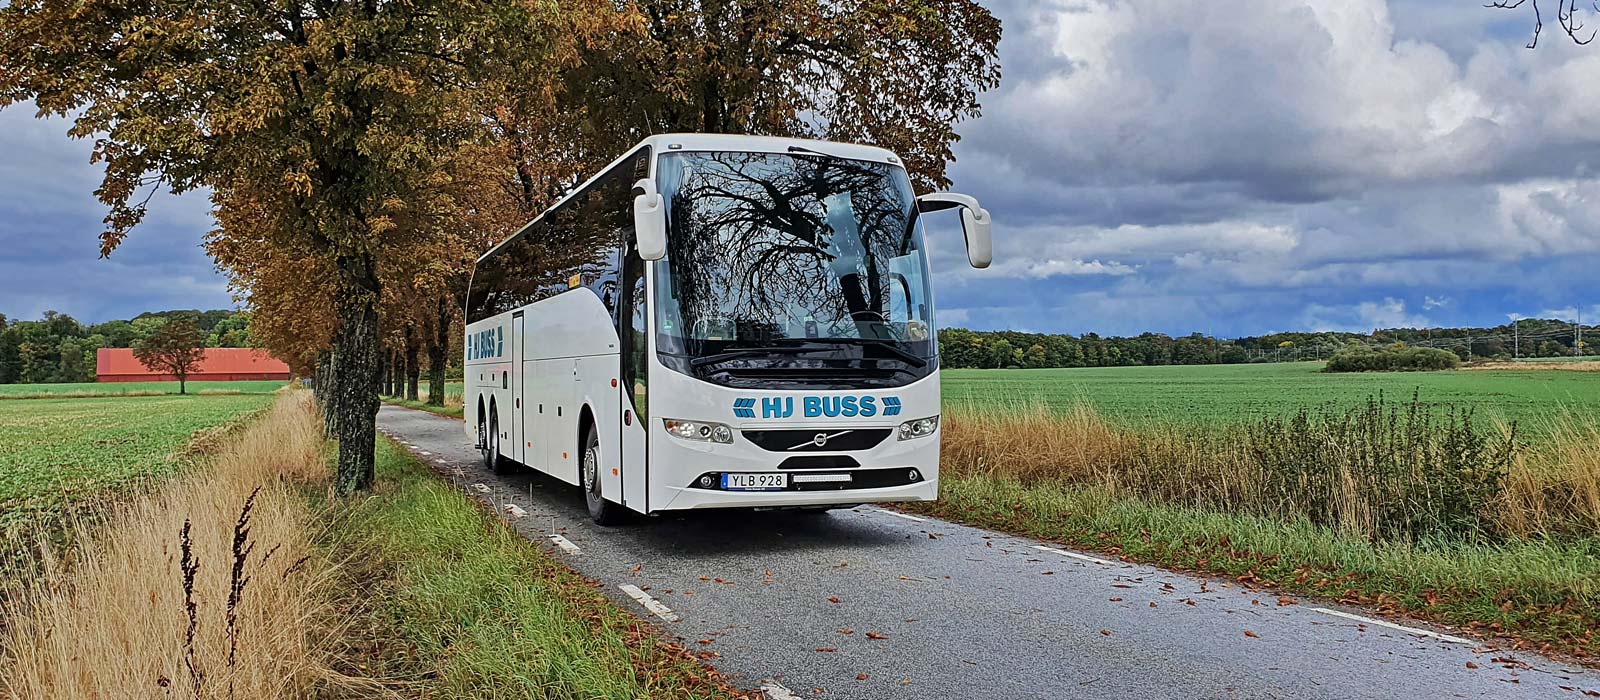 Hemsida för HJ Buss i Skåne